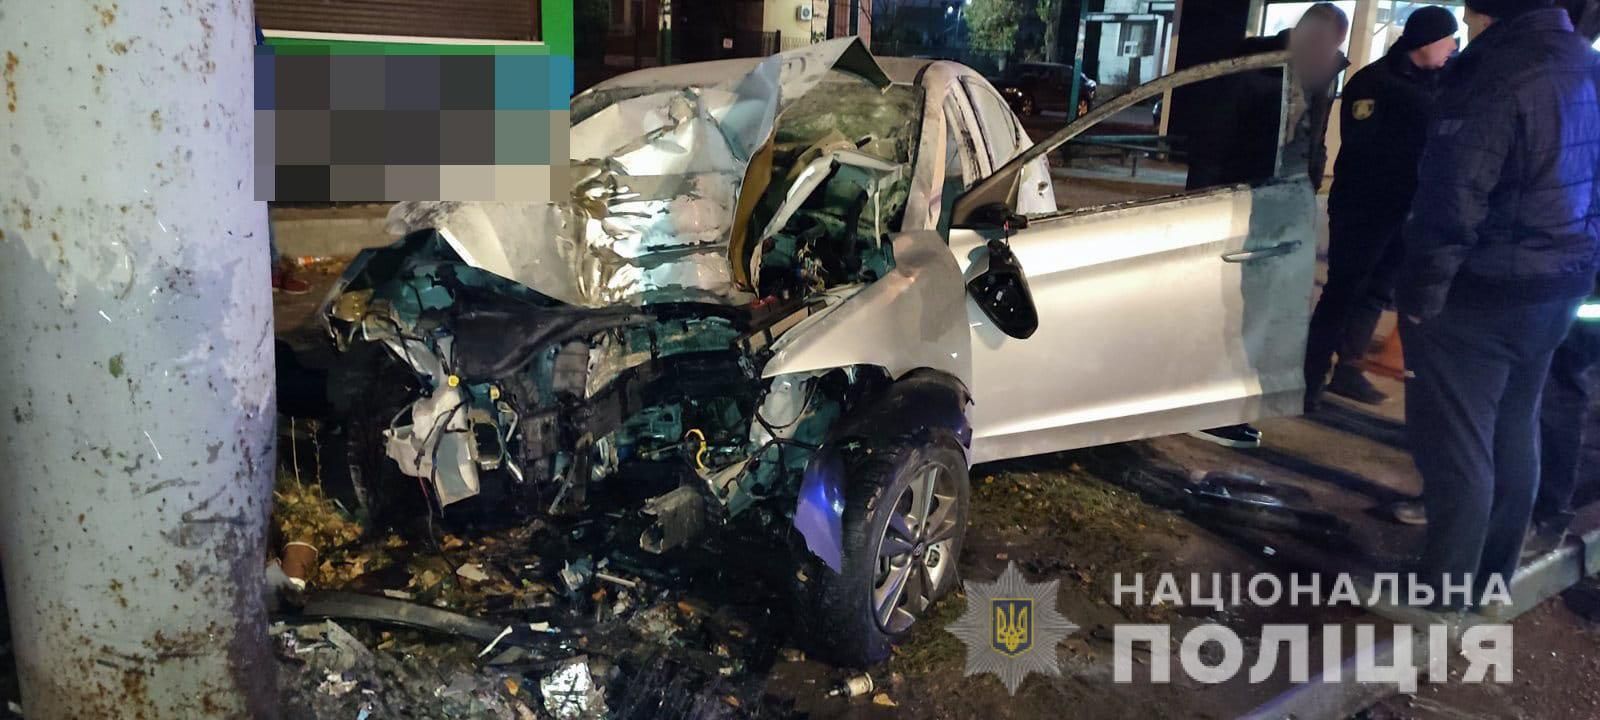 Умер по дороге в больницу: в Харькове водитель не справился с управлением и влетел в столб